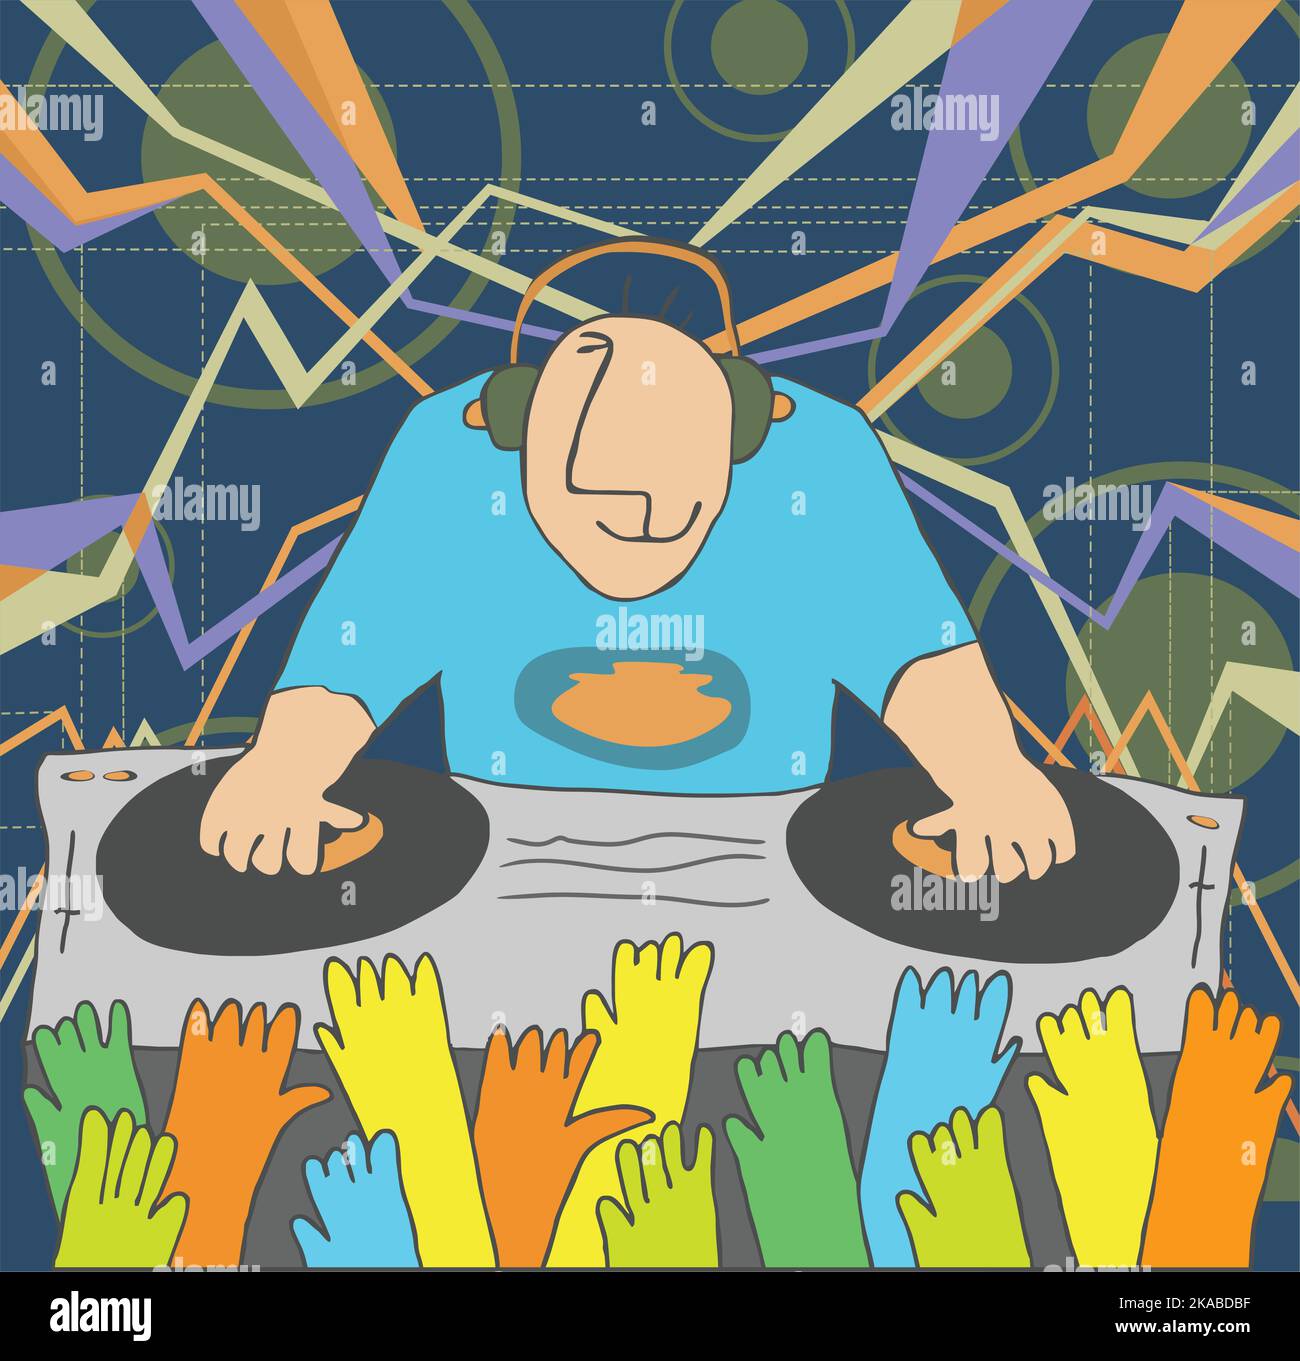 Cartoon funny DJ illustration Stock Vector